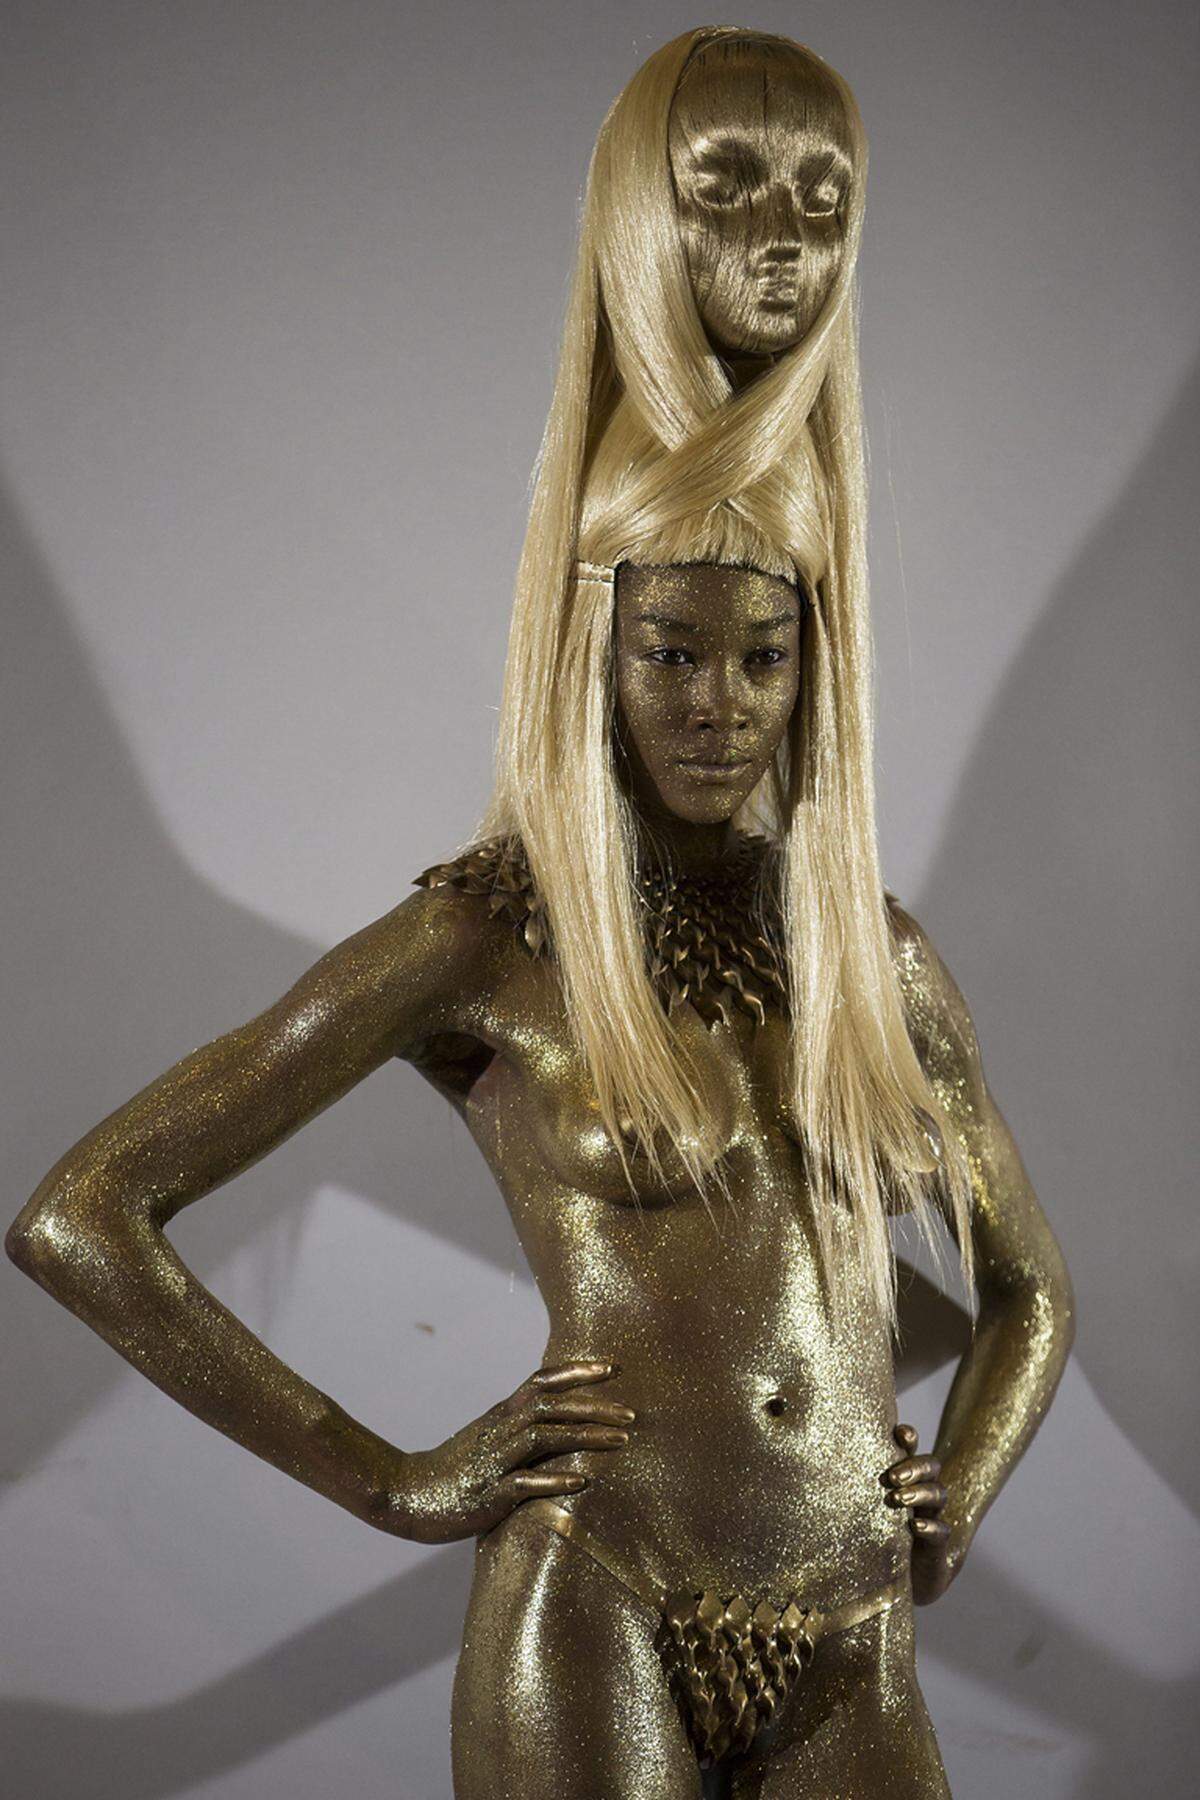 Charlie Le Mindu ist kein unbeschriebenes Blatt, so designte er zum Beispiel für Lady Gaga ein Outfit, passend zu ihrer Single "Hair", gänzlich aus Haaren.